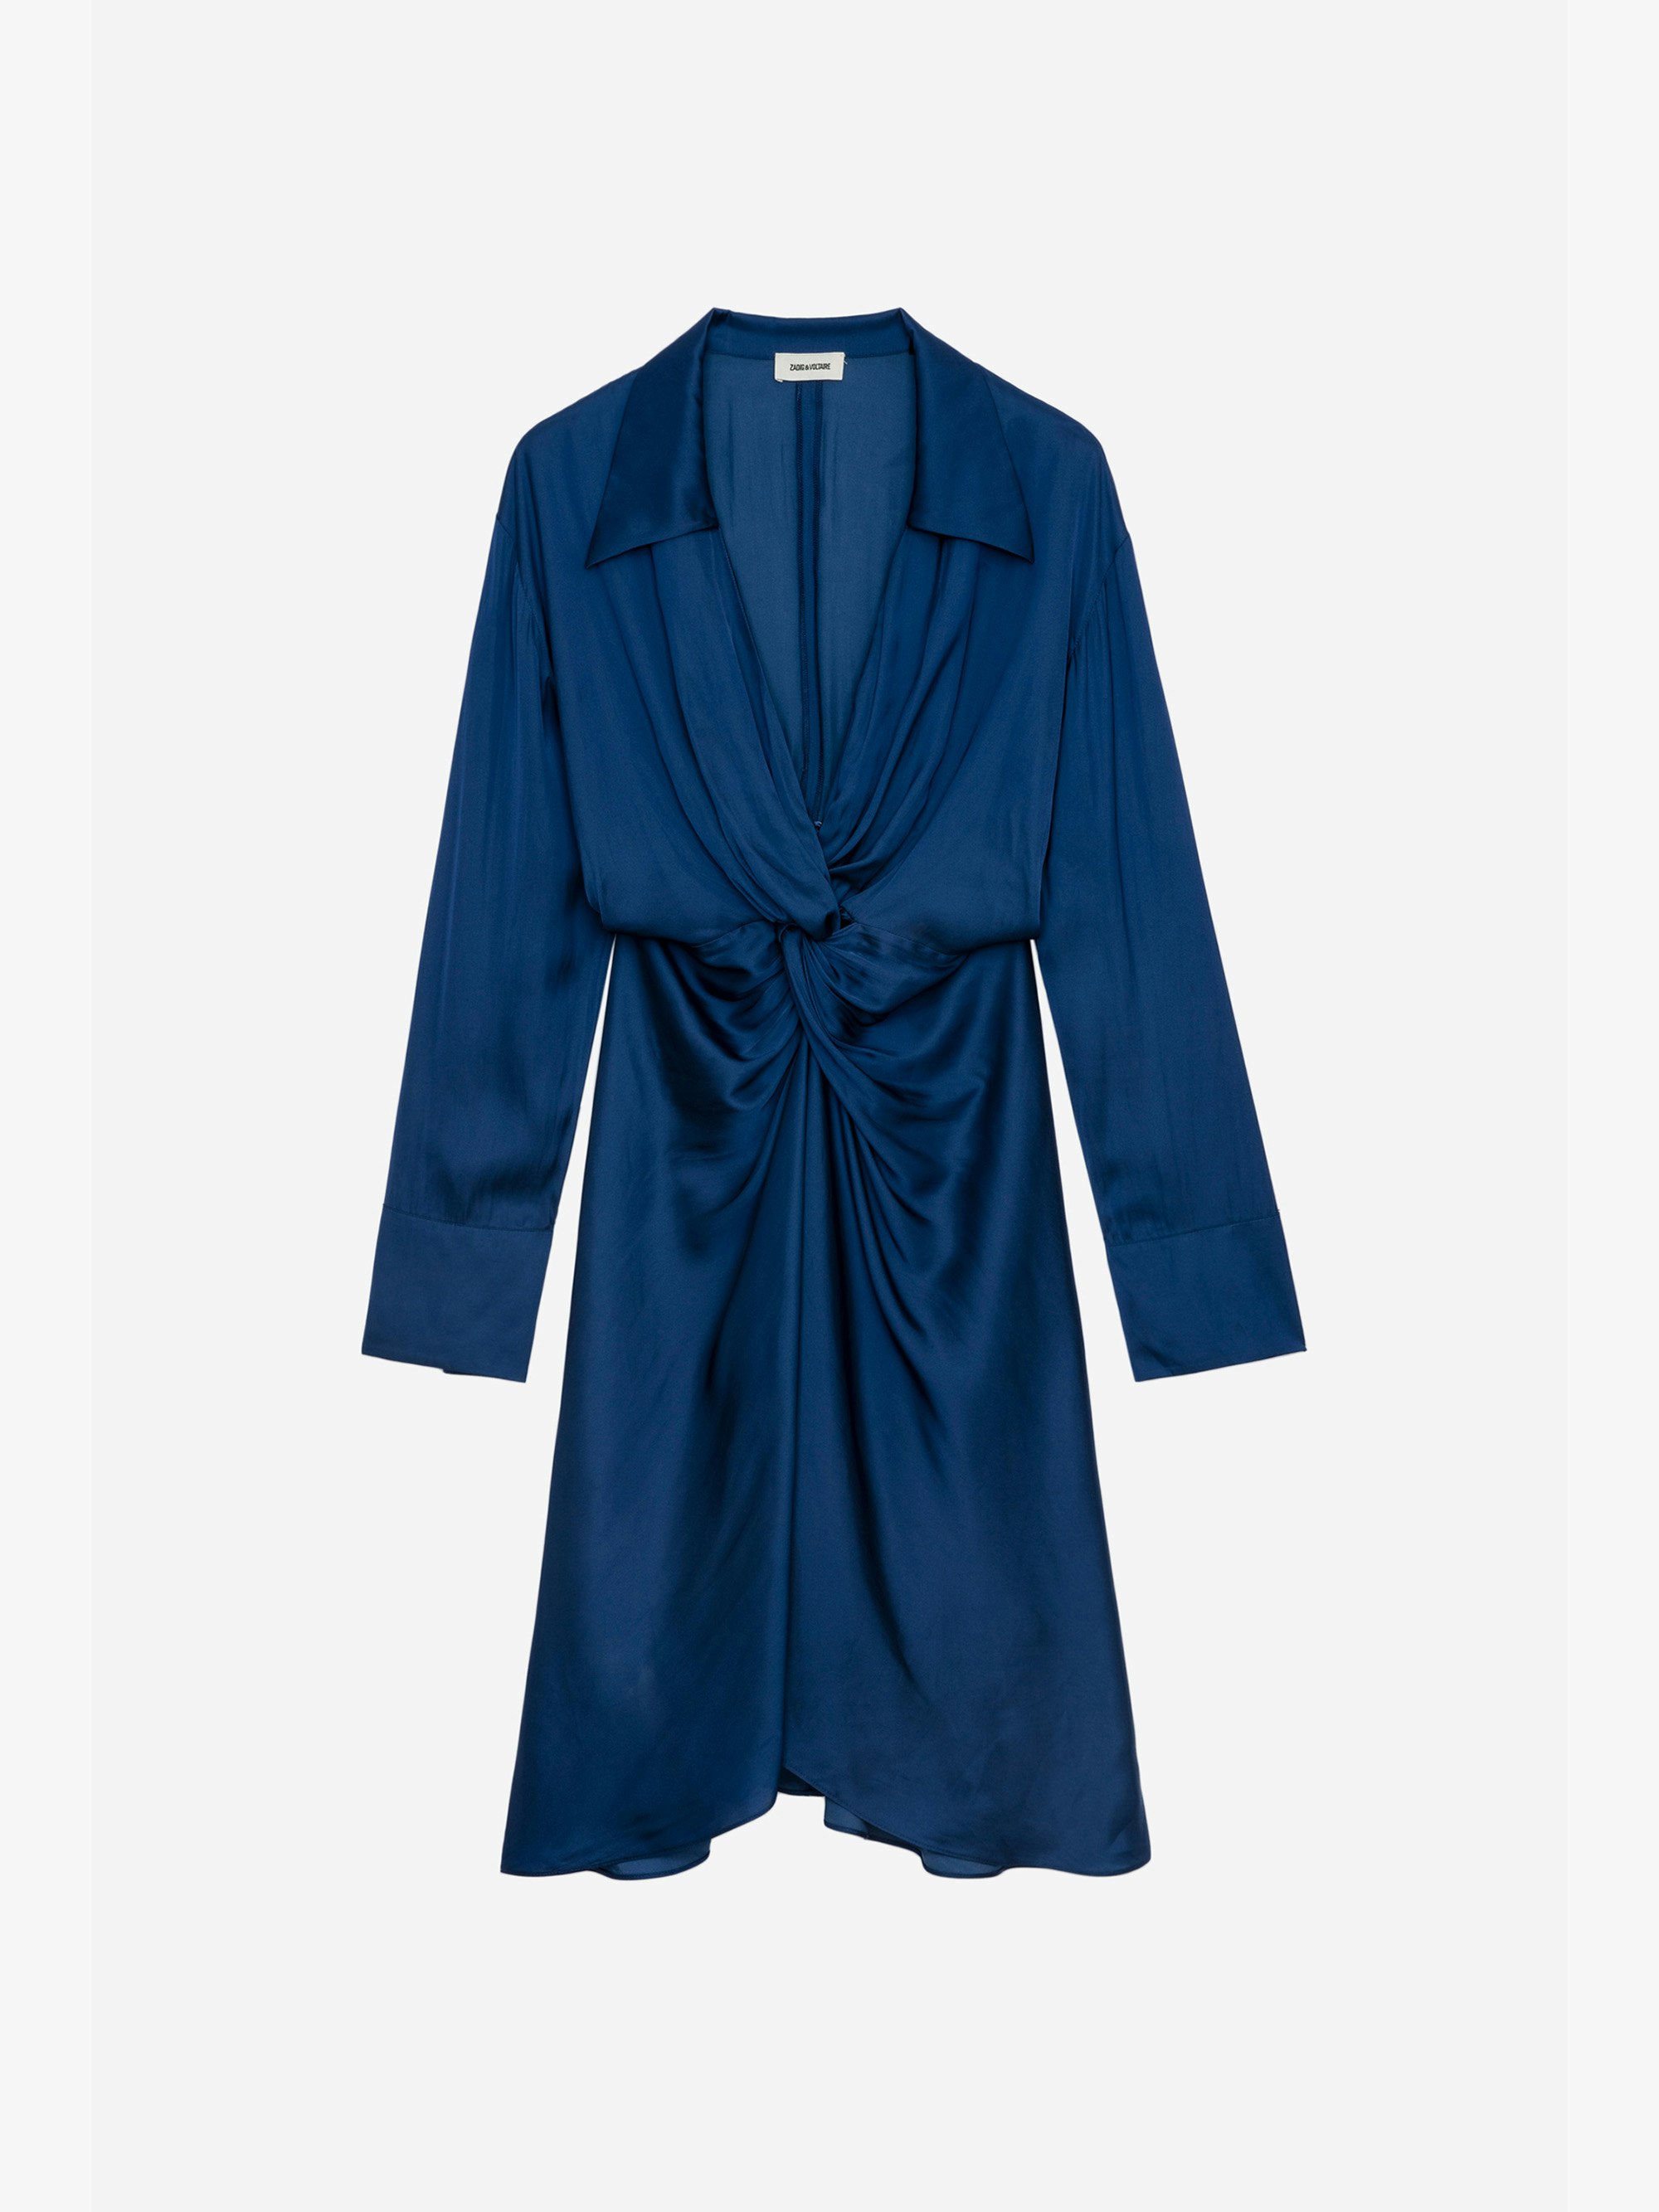 Vestido de Satén Rozo - Vestido azul real de satén de largo medio para mujer, drapeado en la cintura.